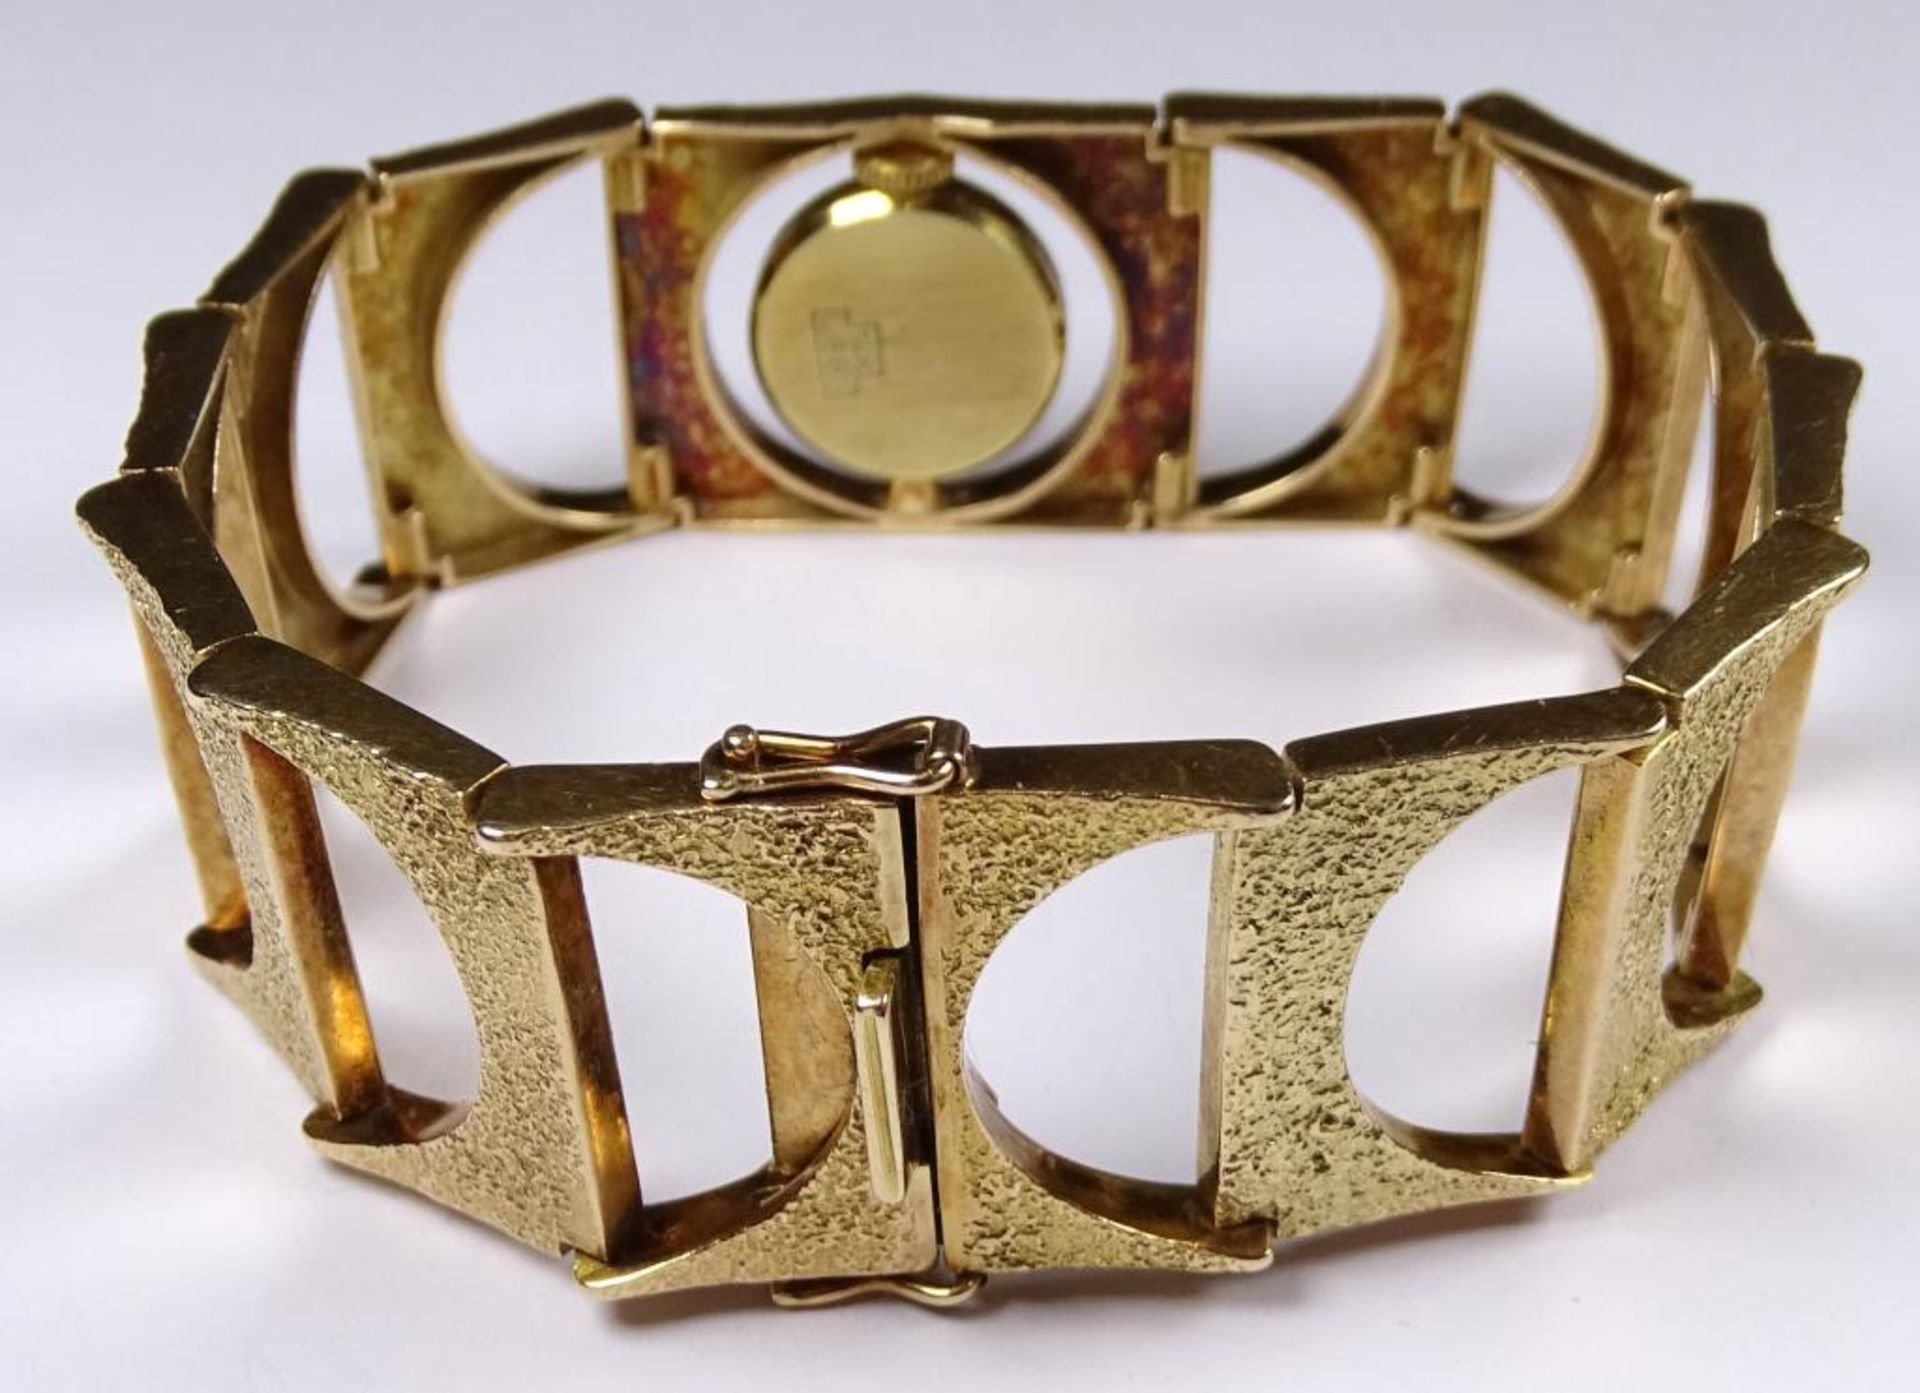 Damen Armbanduhr, Band und Gehäuse Gold -585-,Handaufzug,Werk läuft,L-19cm,b-2,2cm, ges.gew.41,7g - Bild 4 aus 6